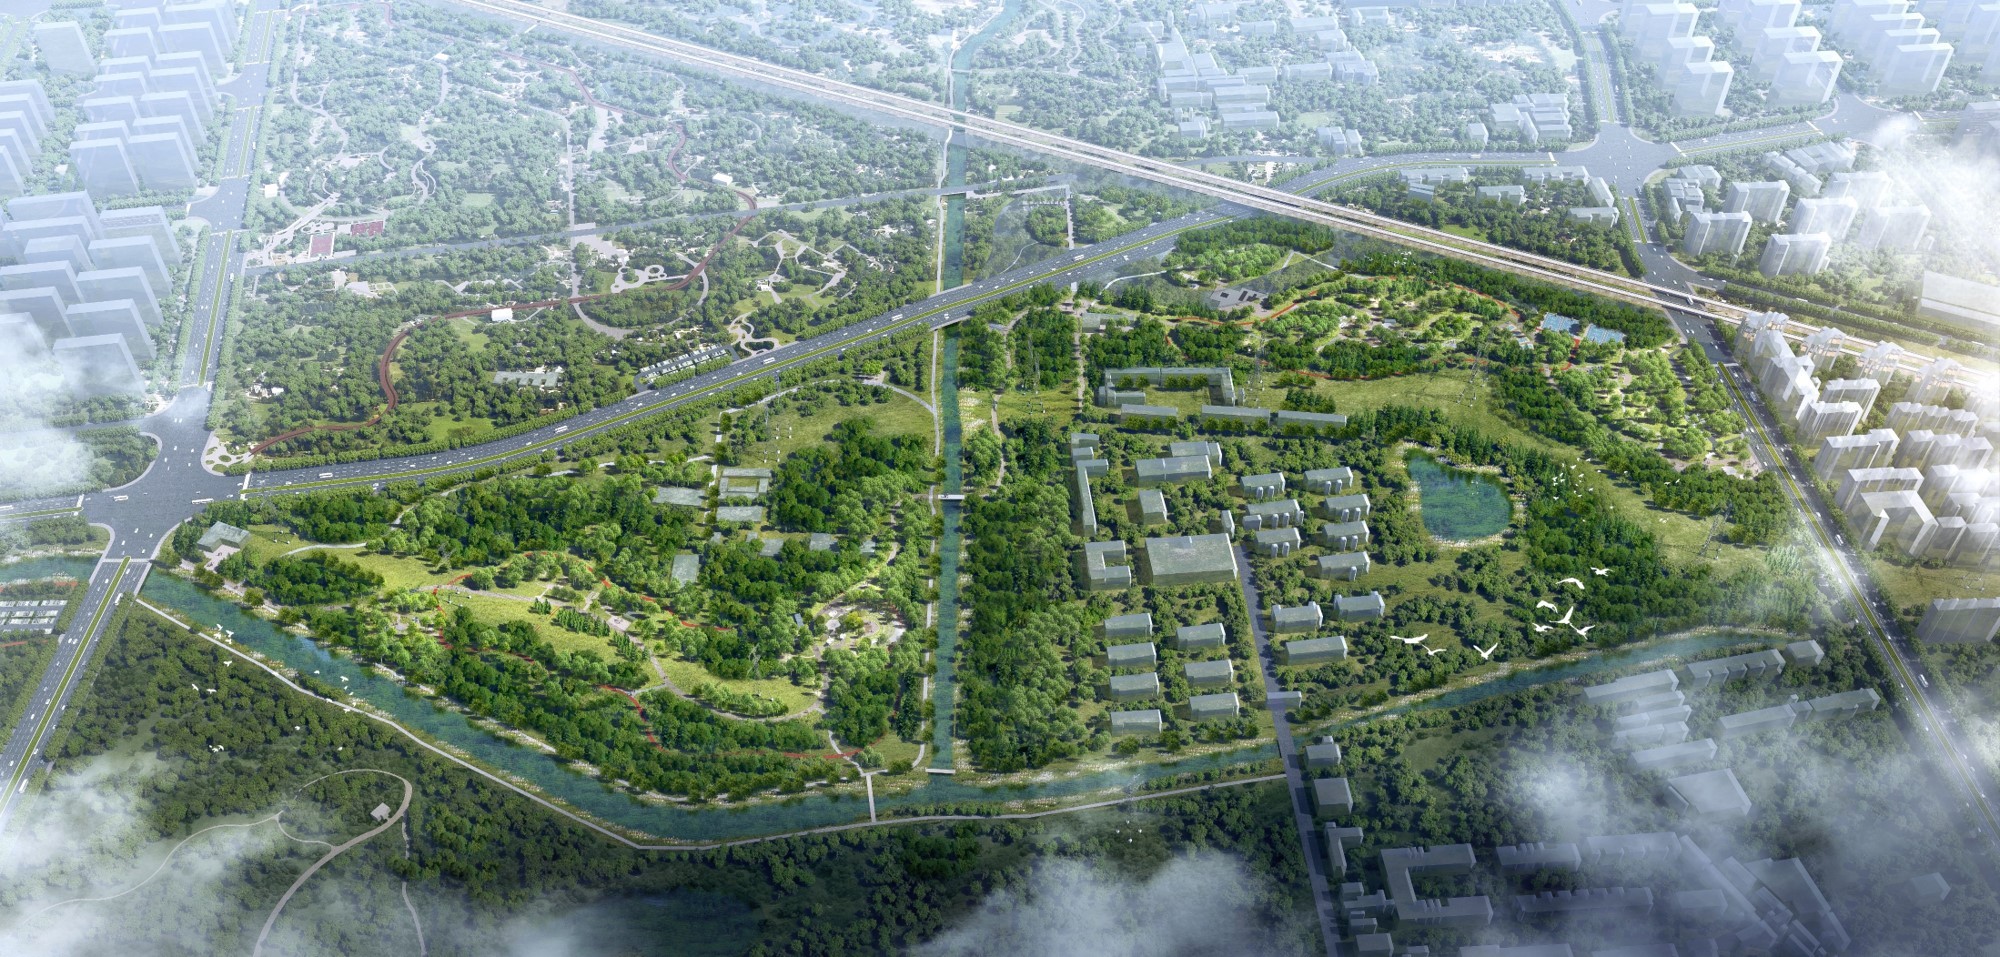 2024年昌平区将新增大批公园绿地